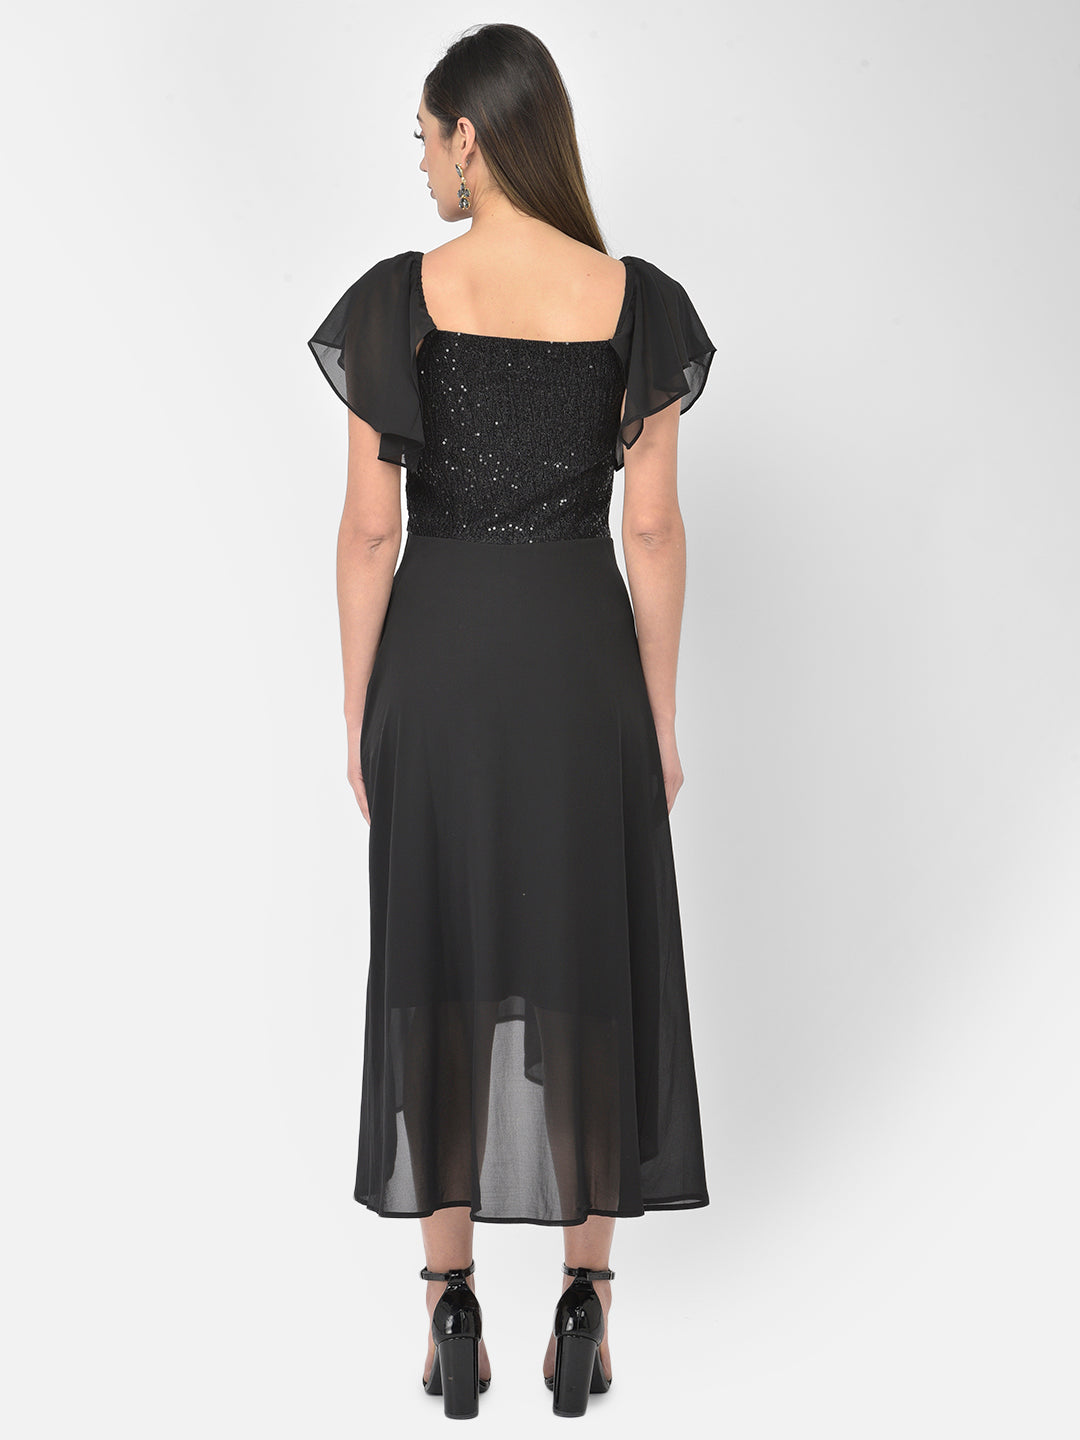 Black Sleeveless Strapless Dress